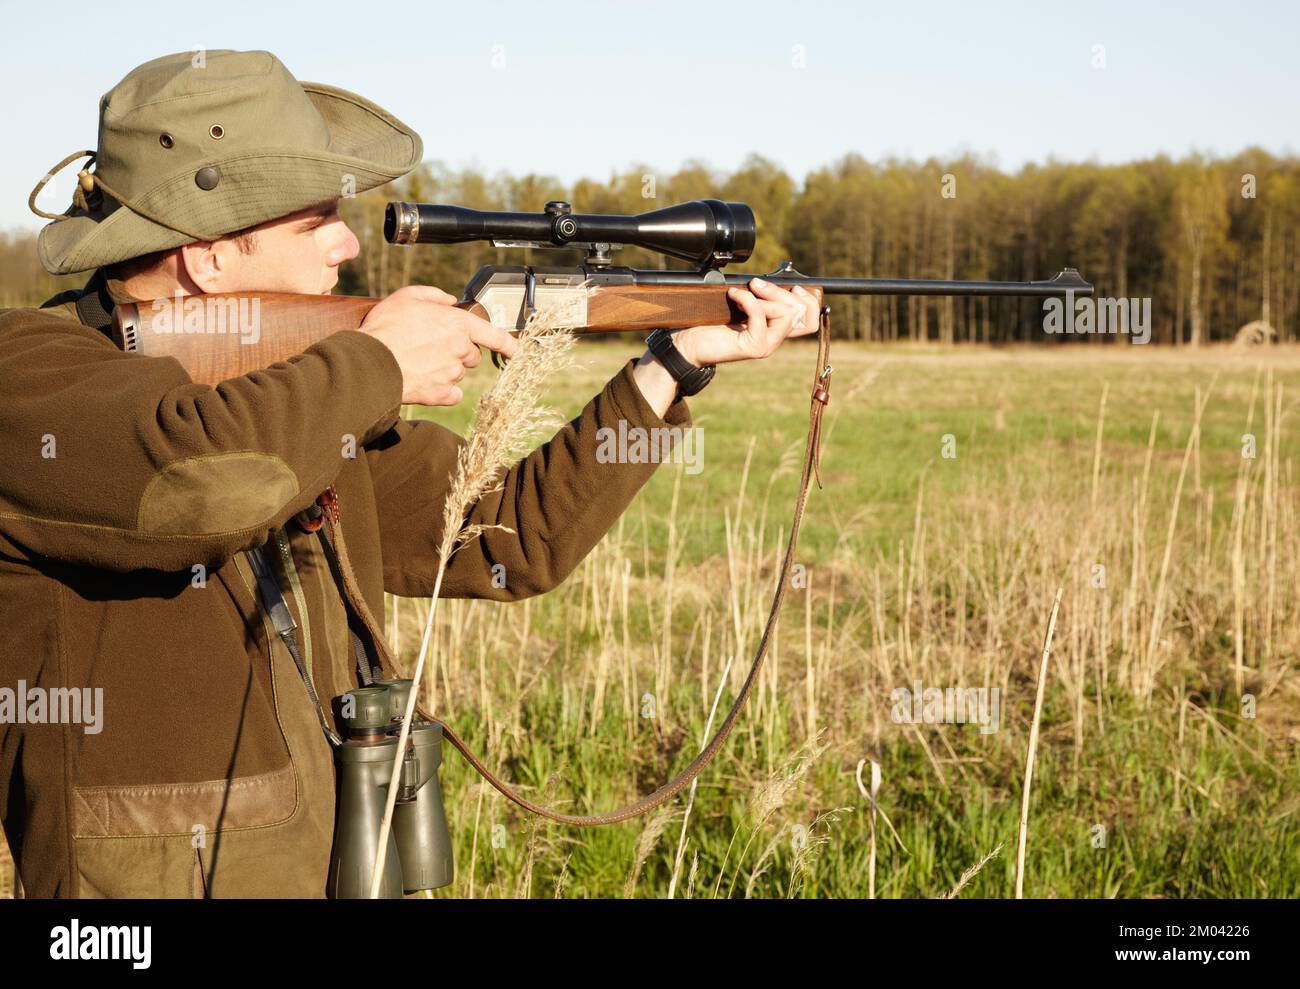 Damit ich den richtigen Schuss bekomme. Ein Wildhüter im Freien, der mit seinem Scharfschützengewehr zielt. Stockfoto